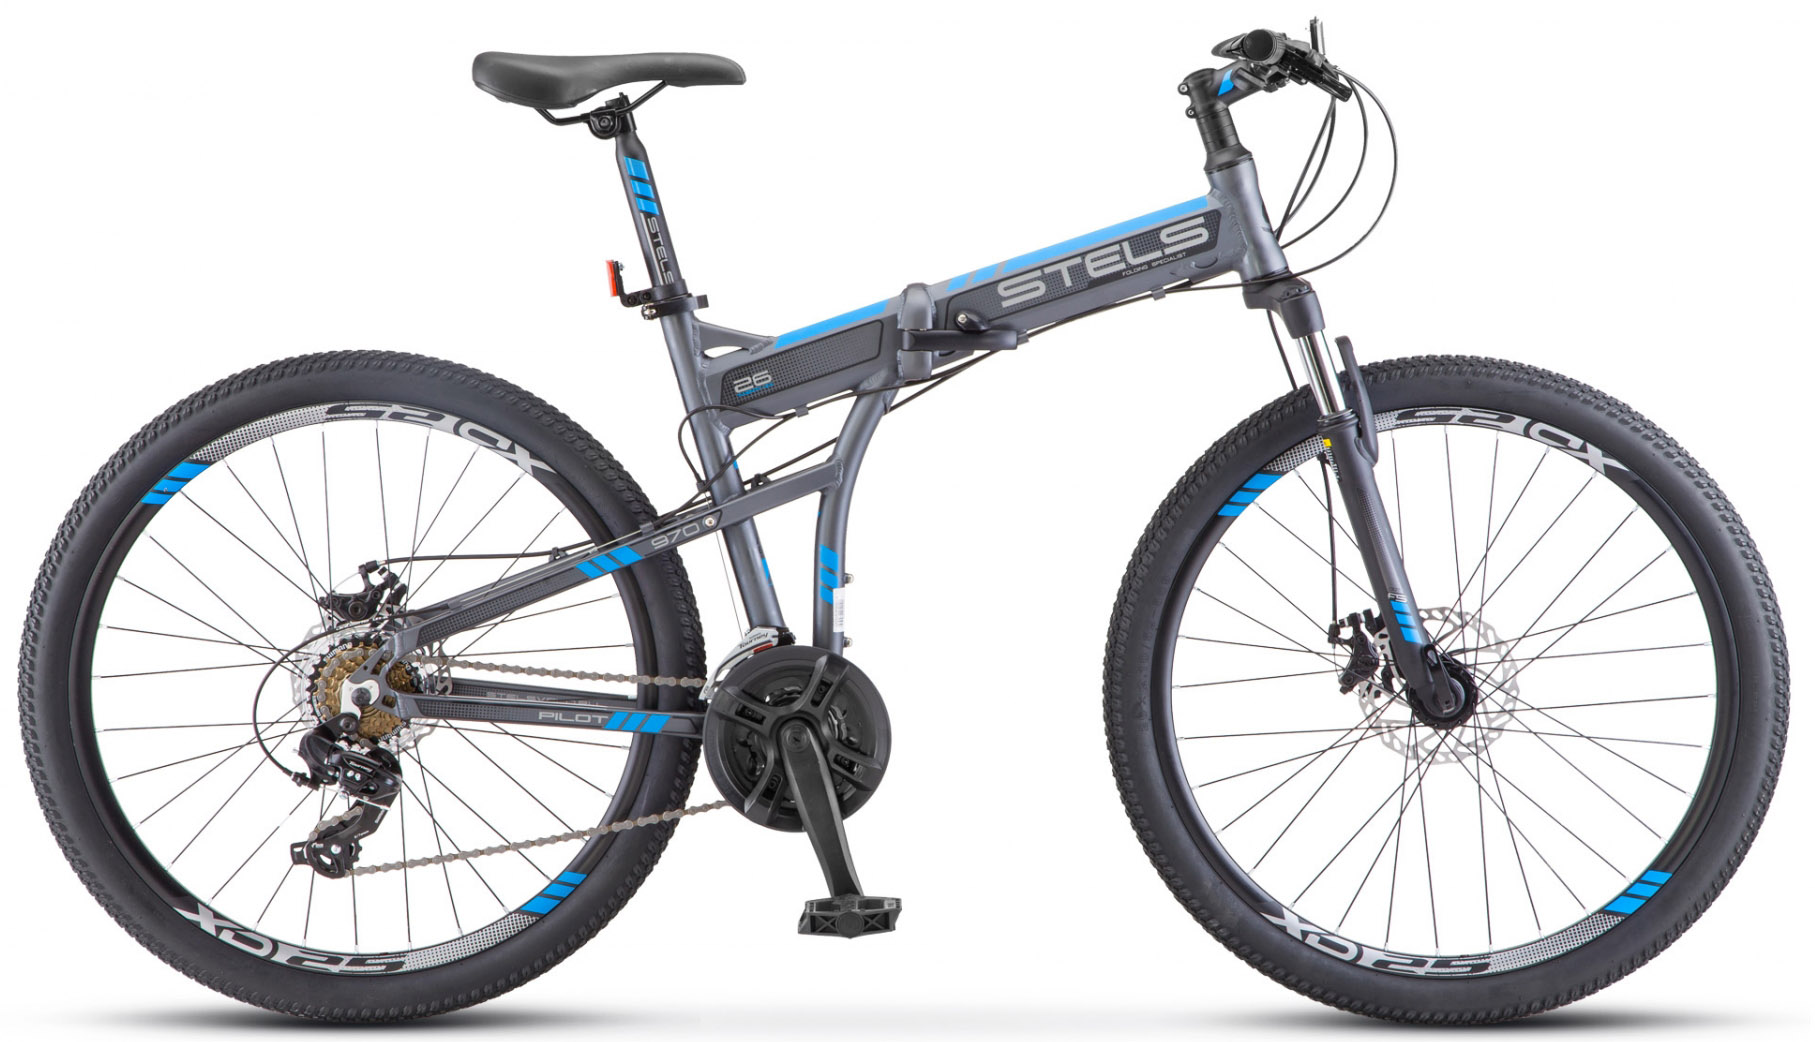  Отзывы о Складном велосипеде Stels Pilot 970 MD V022 2020